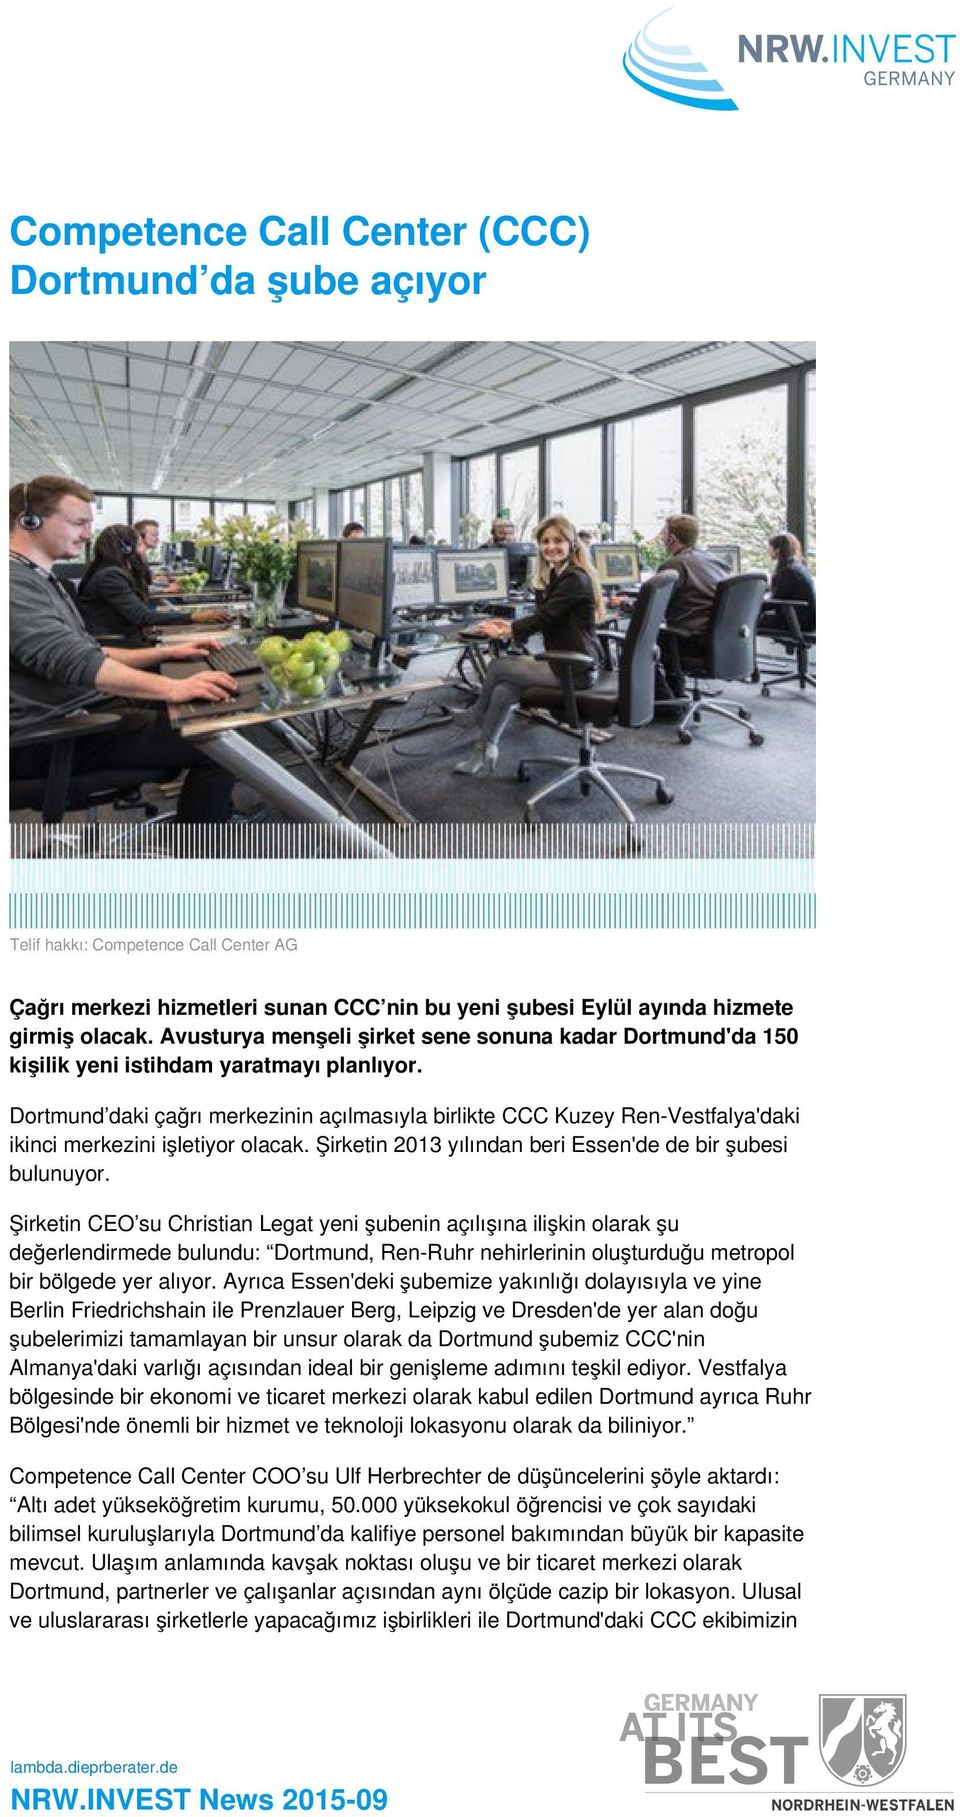 Dortmund daki çağrı merkezinin açılmasıyla birlikte CCC Kuzey Ren-Vestfalya'daki ikinci merkezini işletiyor olacak. Şirketin 2013 yılından beri Essen'de de bir şubesi bulunuyor.